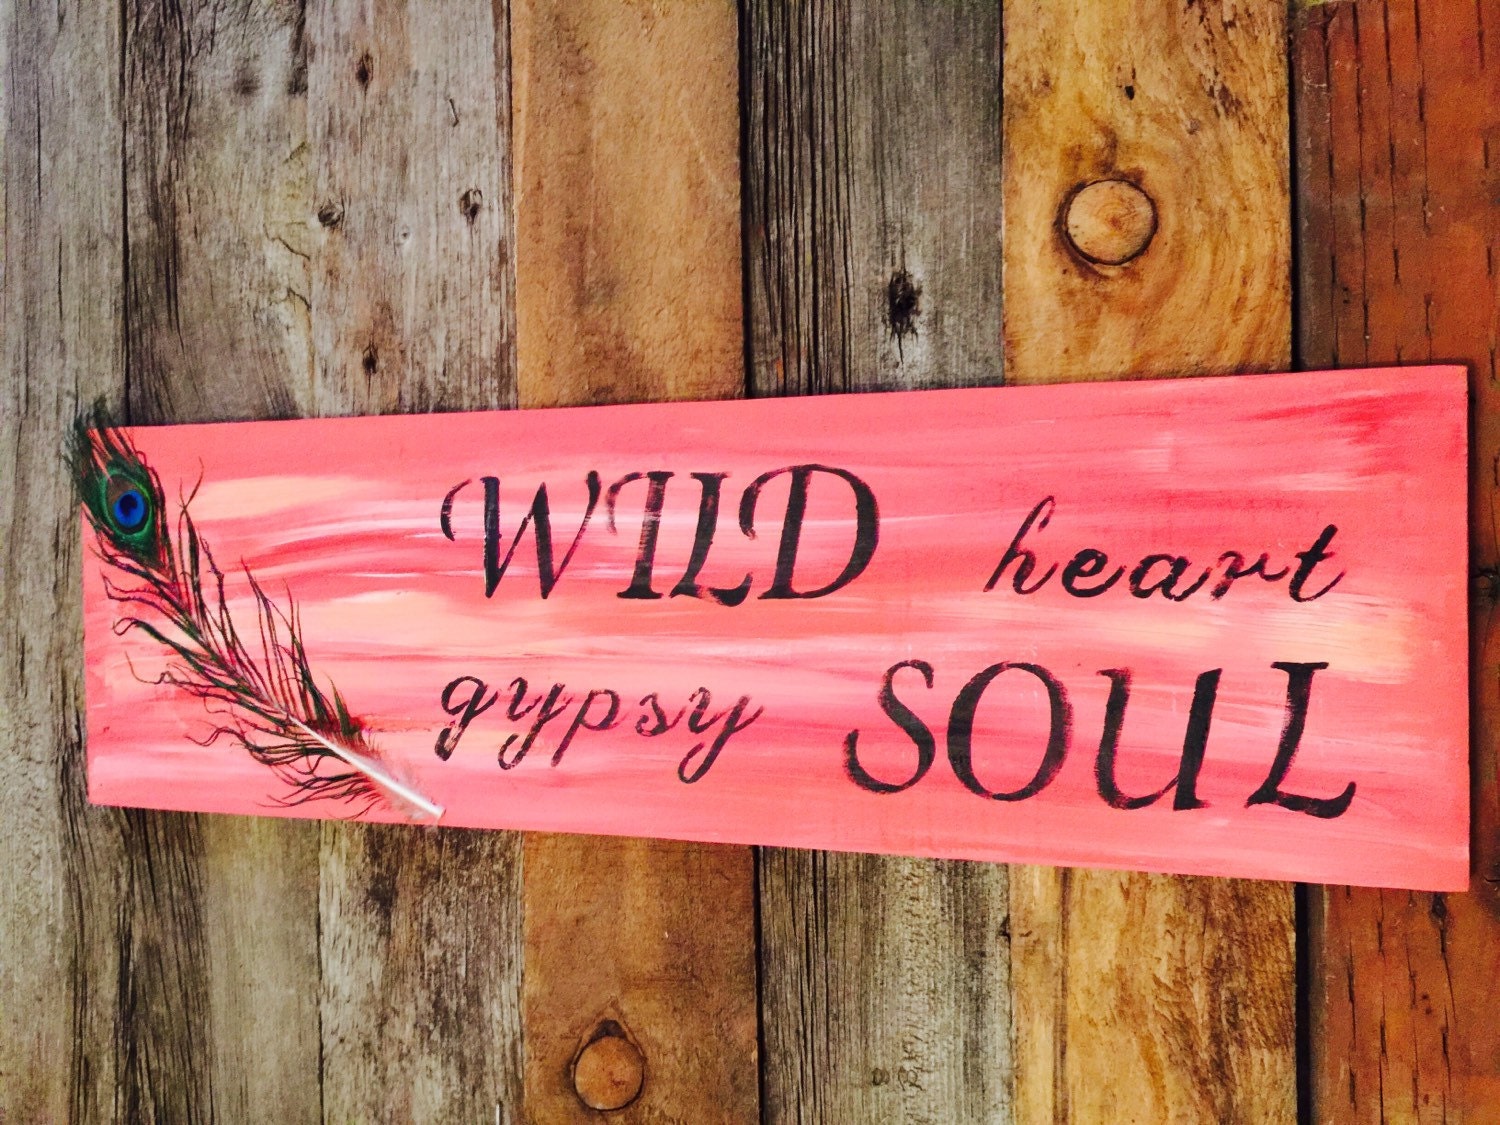 wild heart gypsy soul meaning